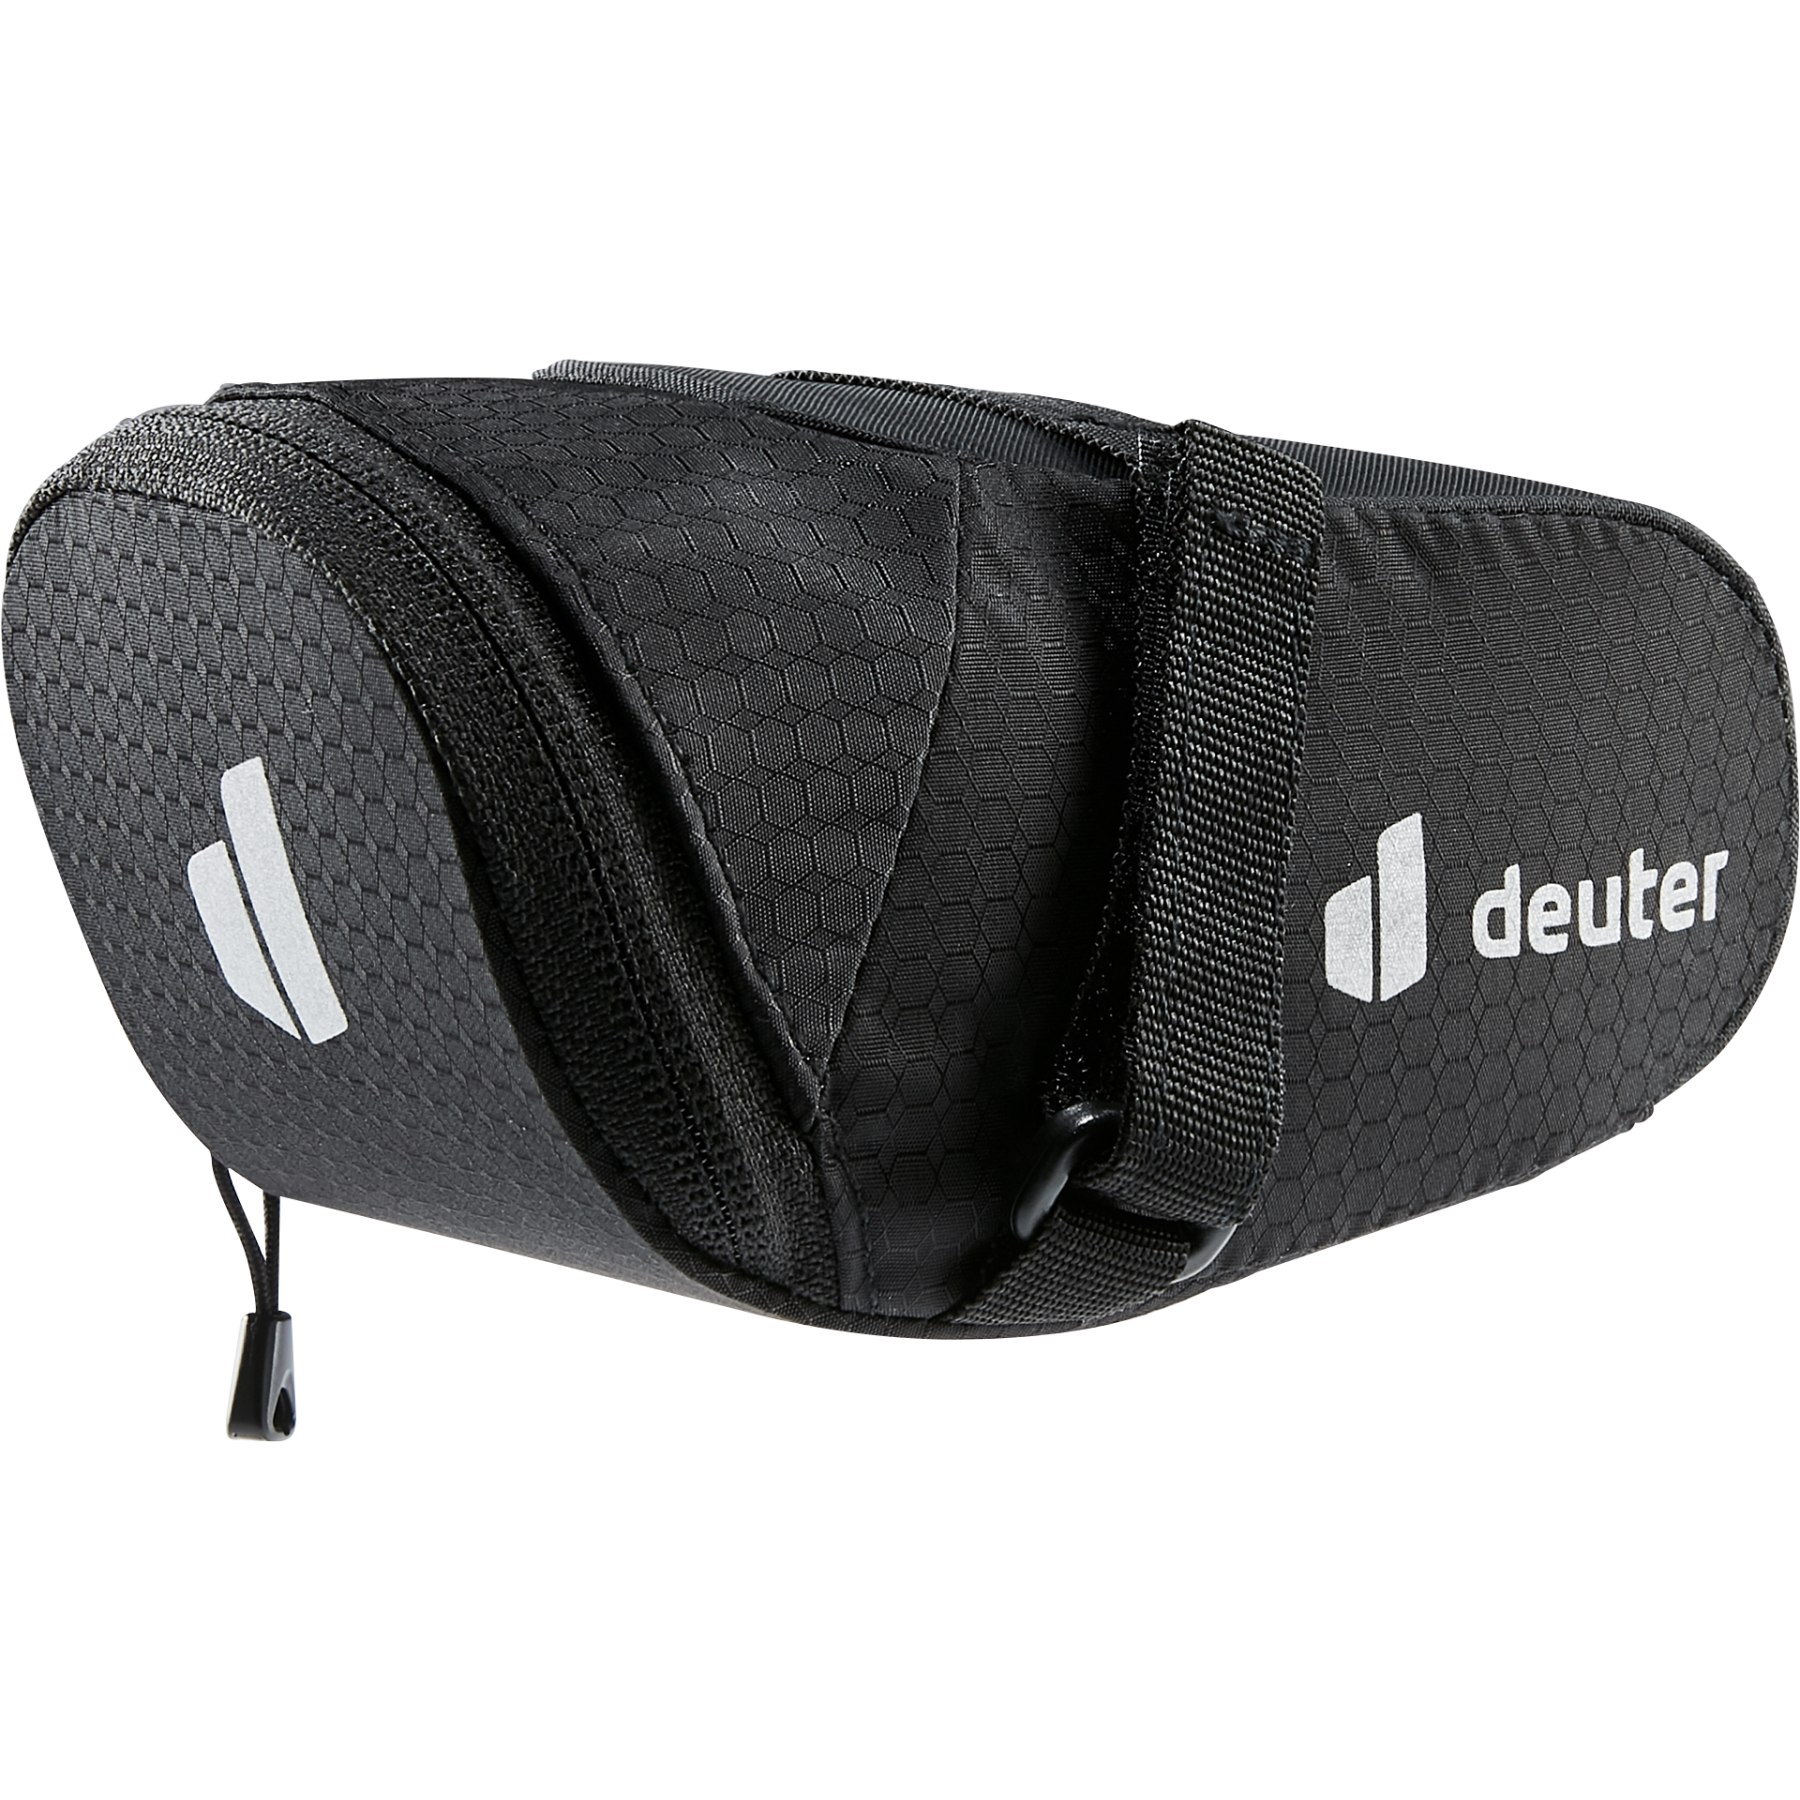 Produktbild von Deuter Bike Bag 0.5L Satteltasche - schwarz